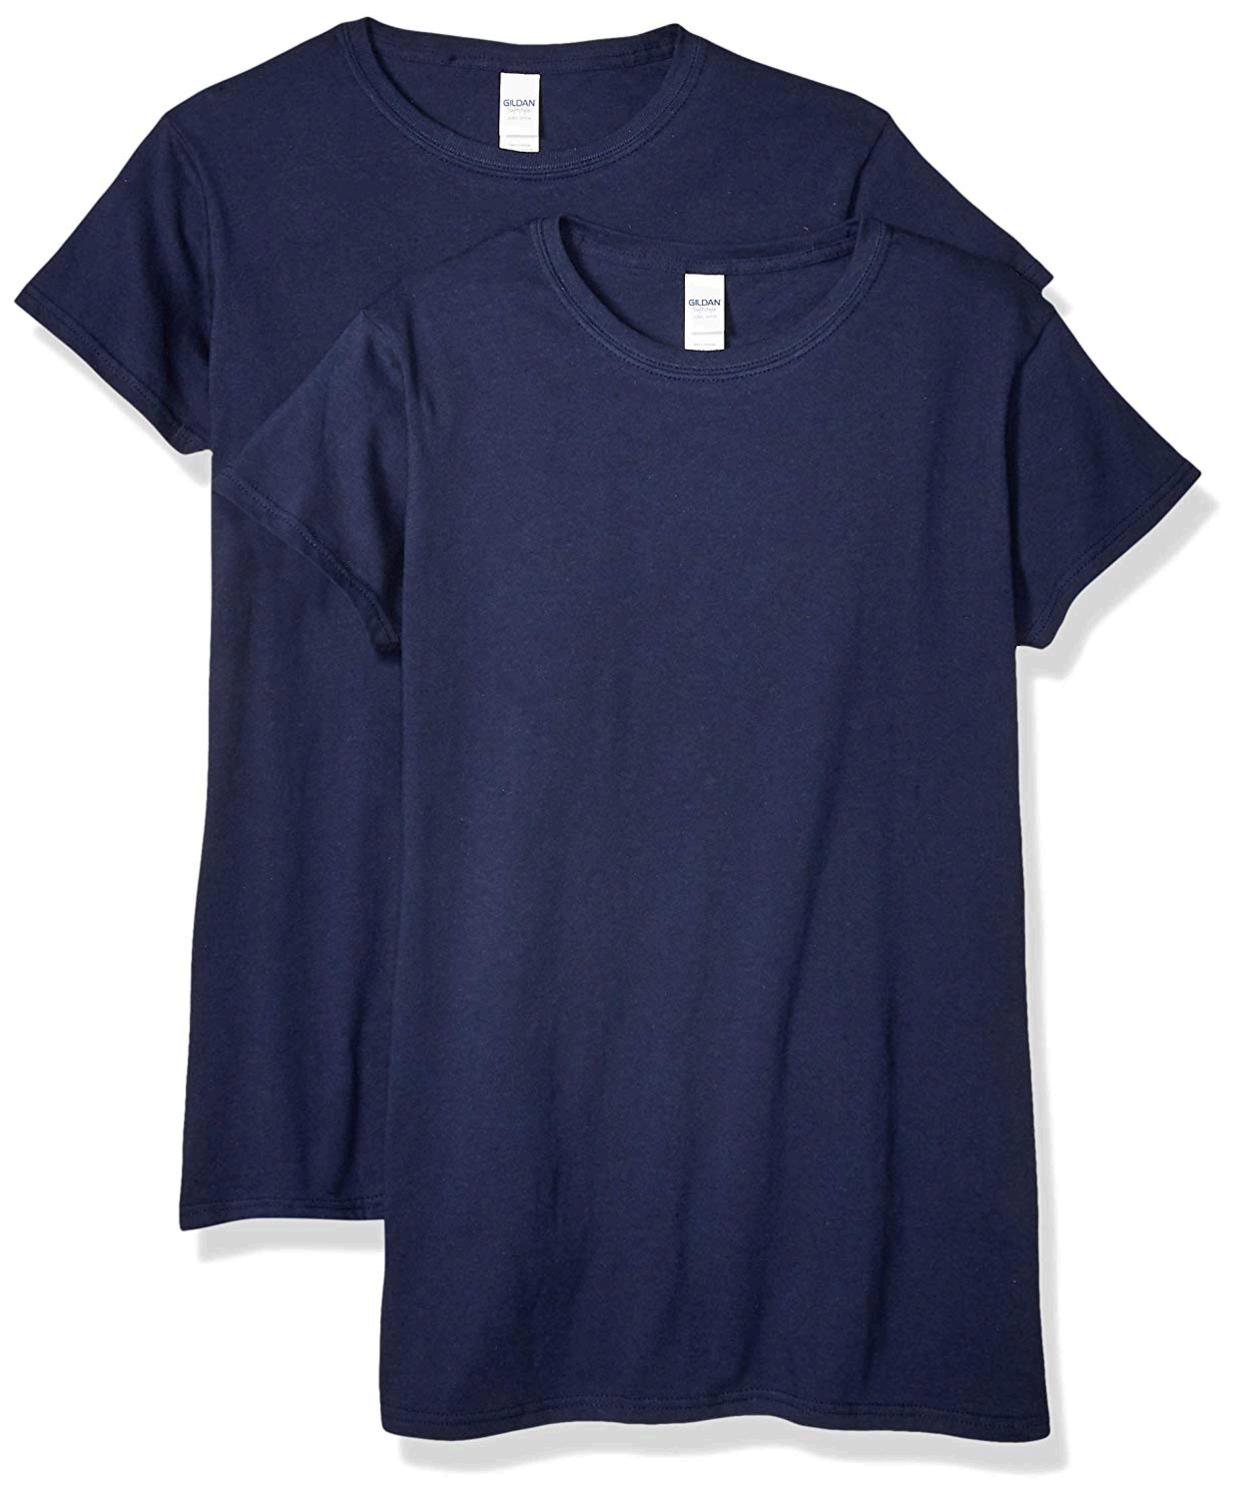 Gildan Women's Fitted Cotton T-Shirt, 2-Pack, Navy, Medium, Navy, Size ...